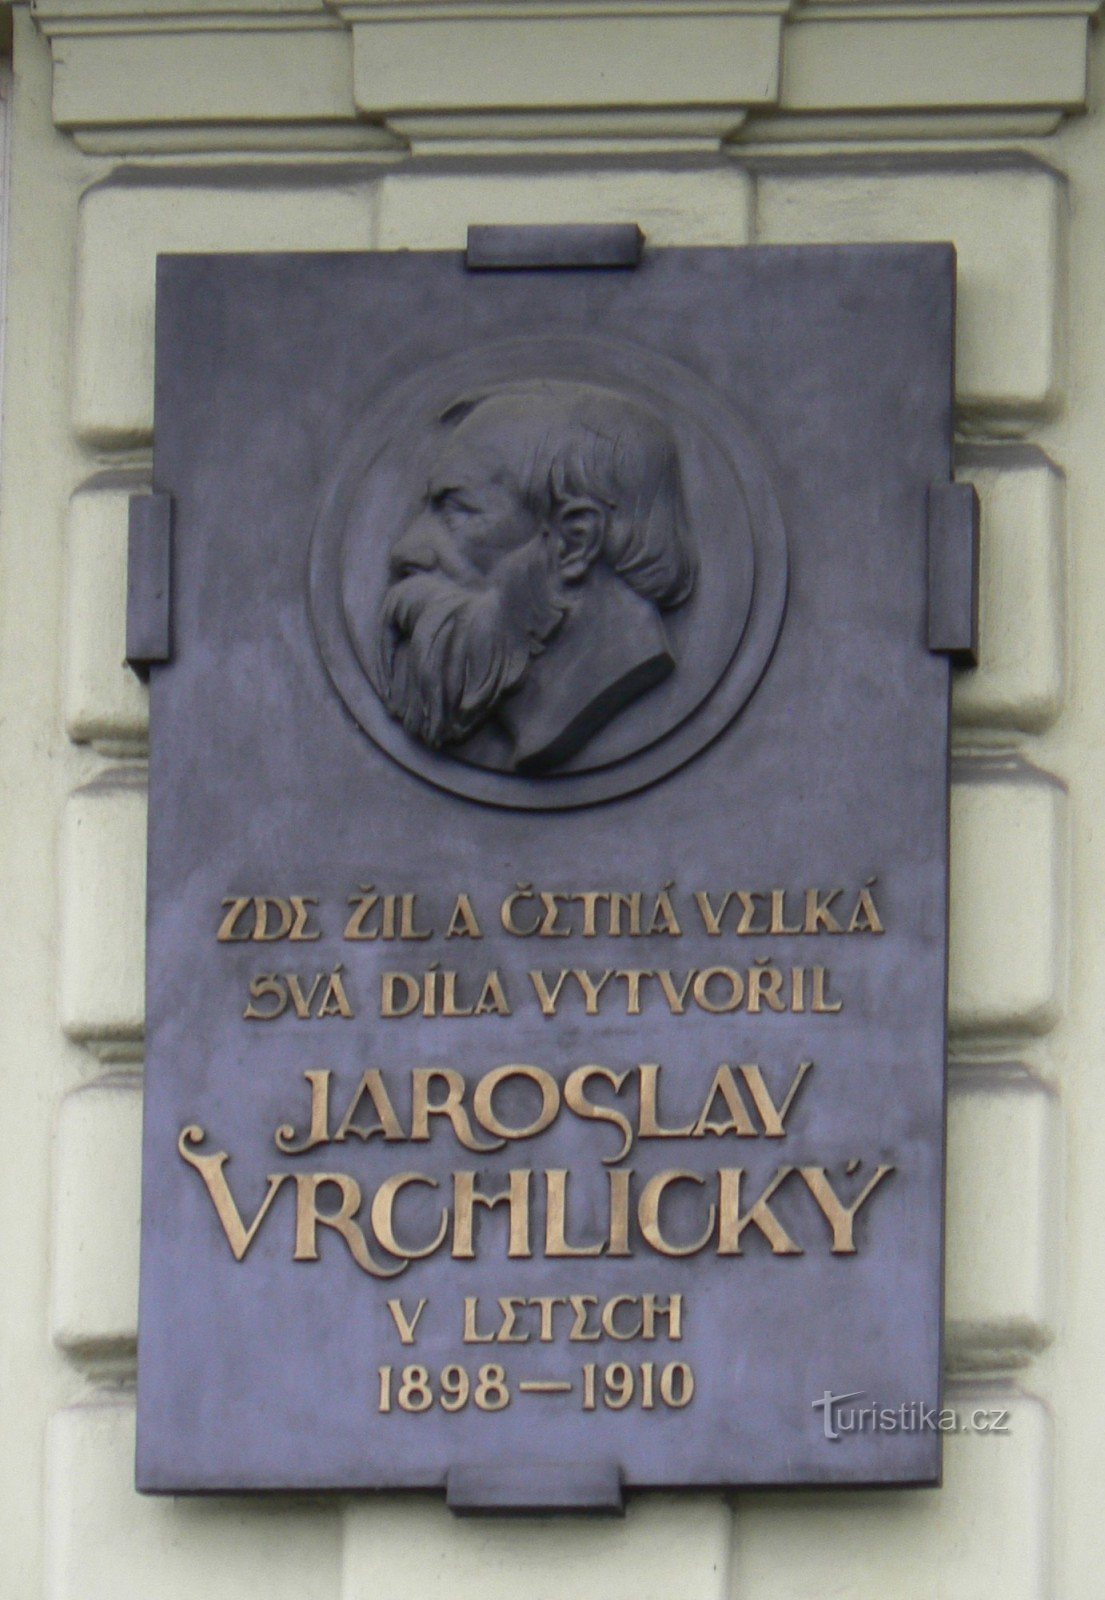 Tablica pamiątkowa Jaroslava Vrchlickiego